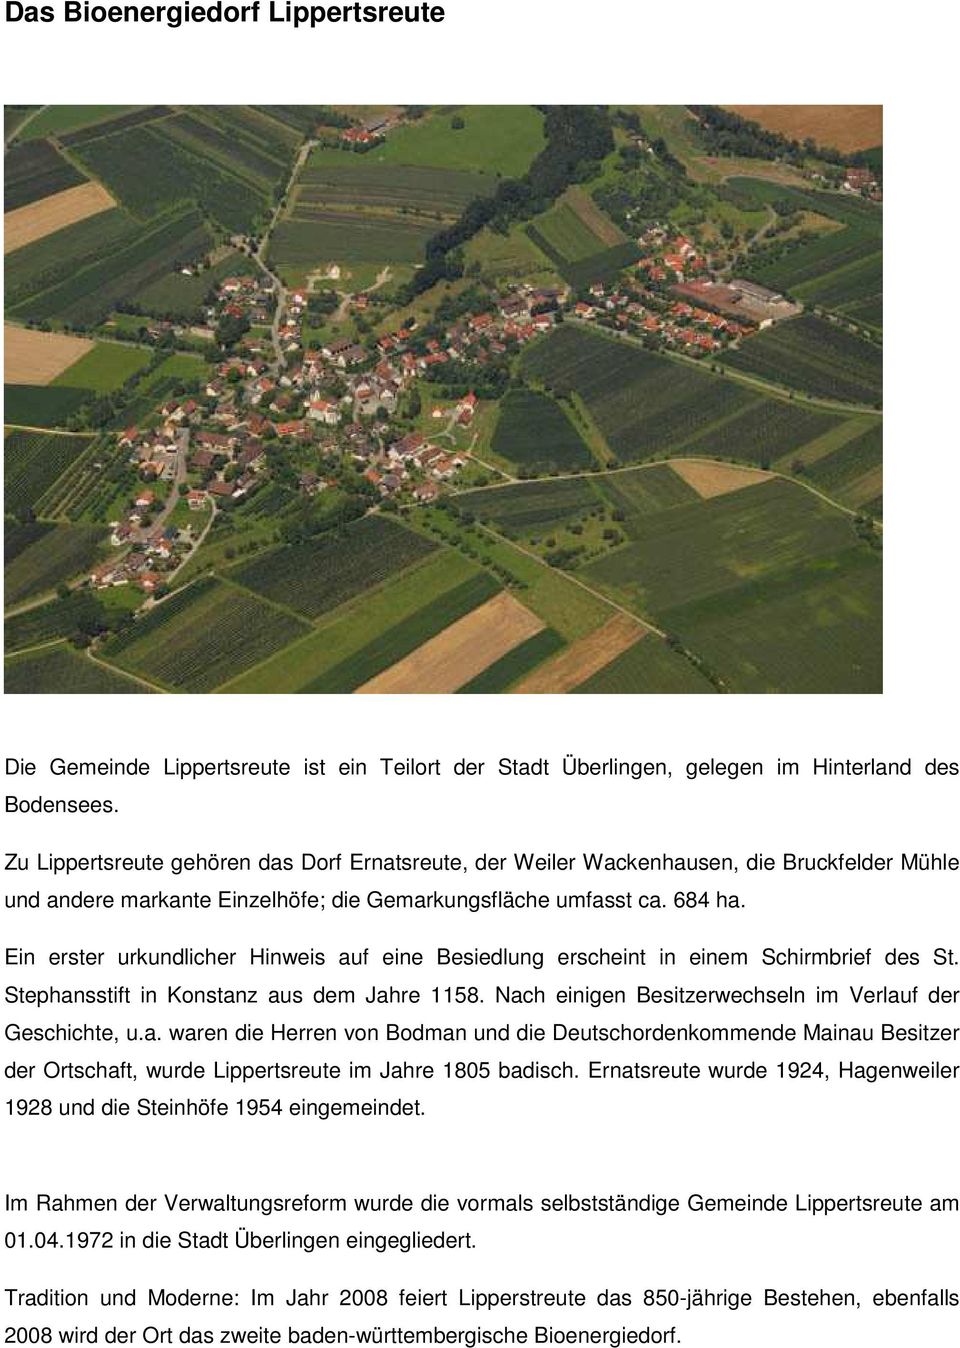 Ein erster urkundlicher Hinweis auf eine Besiedlung erscheint in einem Schirmbrief des St. Stephansstift in Konstanz aus dem Jahre 1158. Nach einigen Besitzerwechseln im Verlauf der Geschichte, u.a. waren die Herren von Bodman und die Deutschordenkommende Mainau Besitzer der Ortschaft, wurde Lippertsreute im Jahre 1805 badisch.